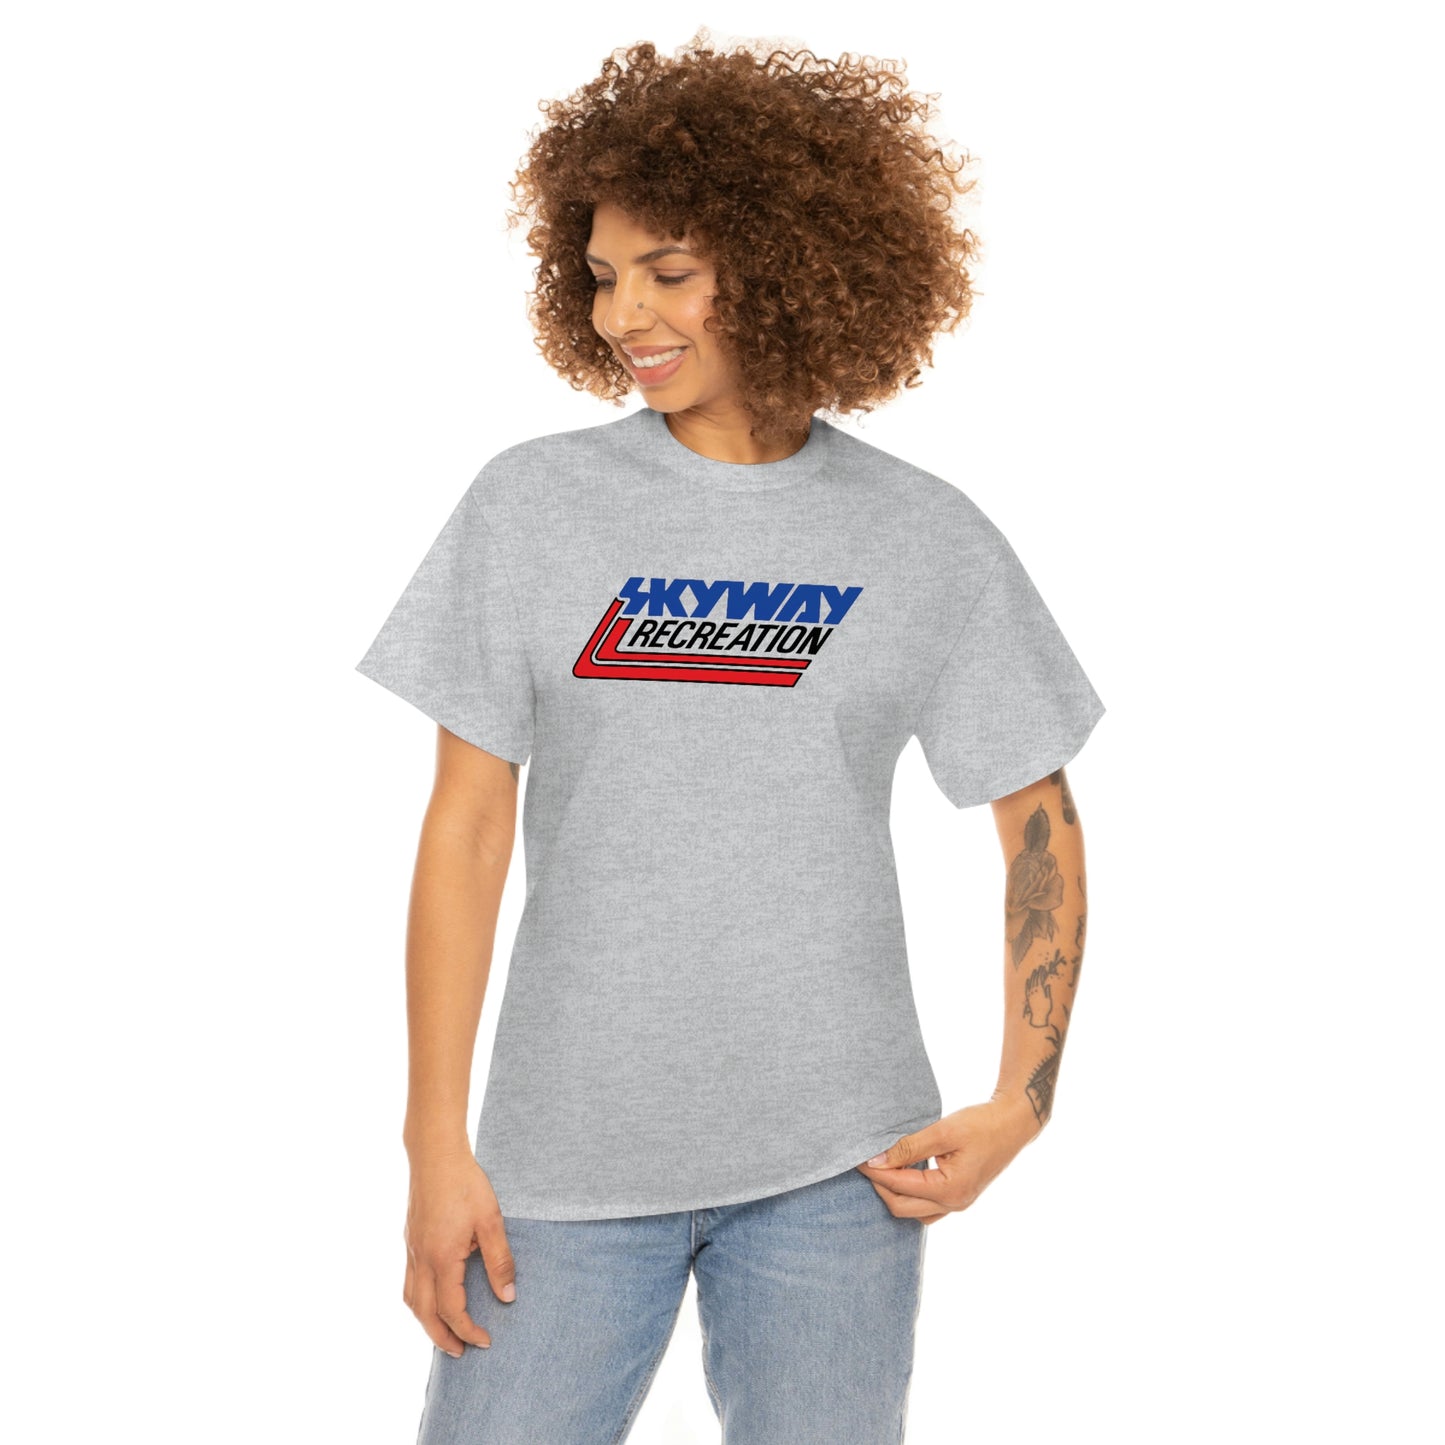 Skyway T-Shirt